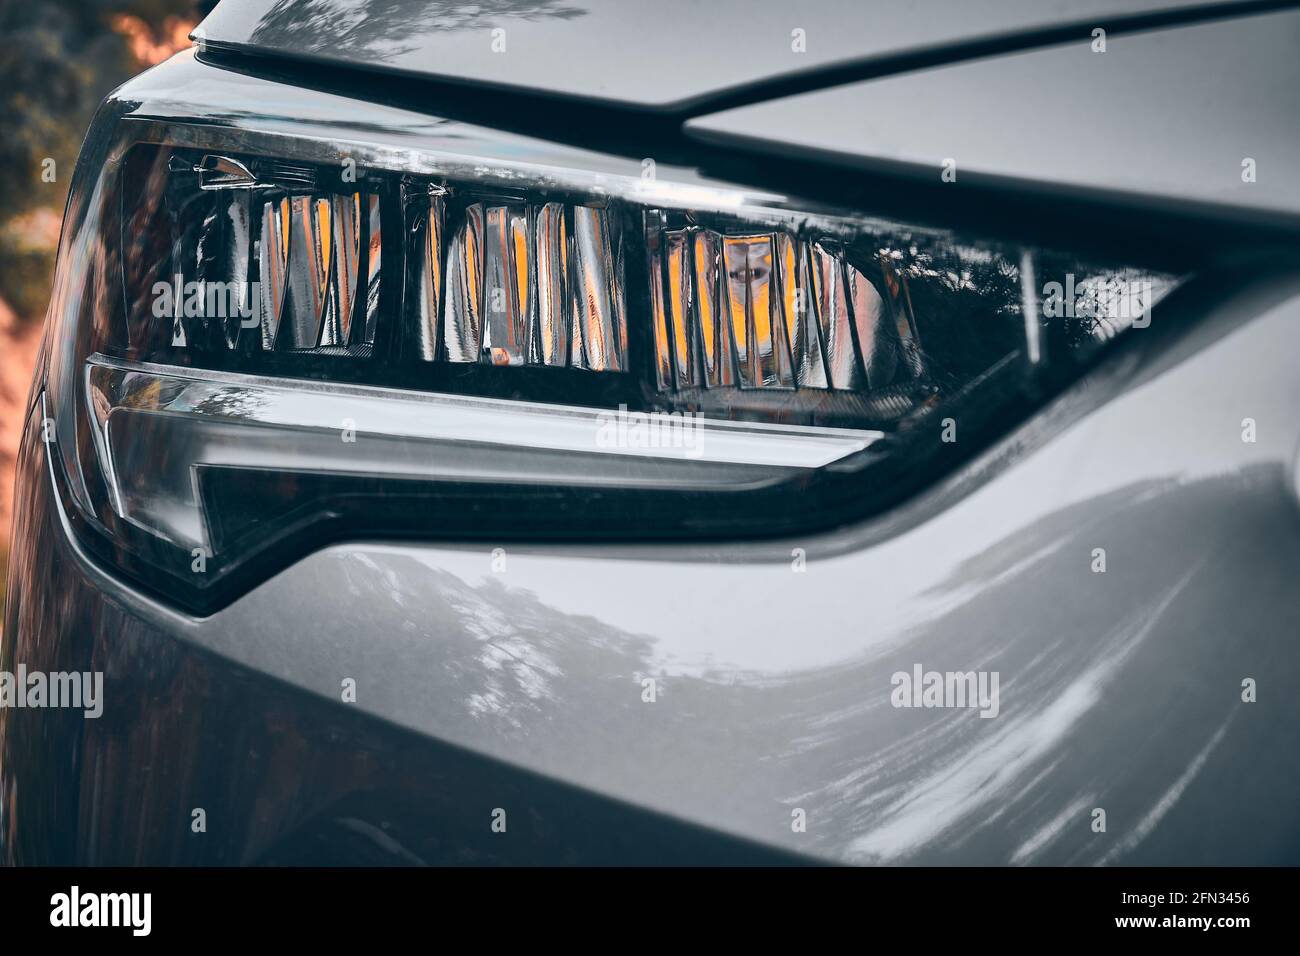 LED-Scheinwerfer von modernen Auto Nahaufnahme Stockfotografie - Alamy